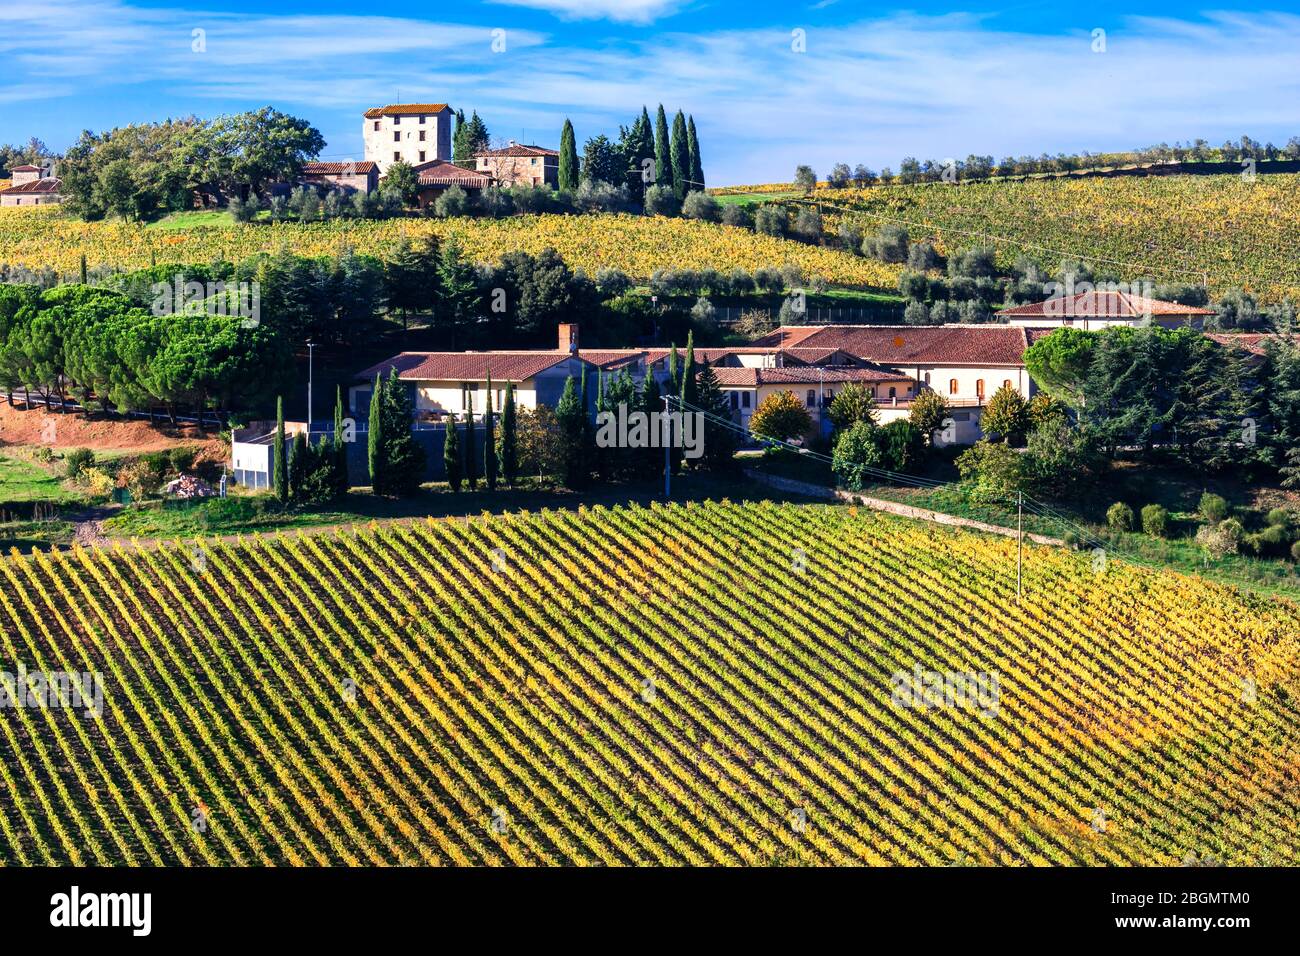 Belle campagne d'Italie, plantations de raisin . Toscane - région viticole célèbre. Banque D'Images